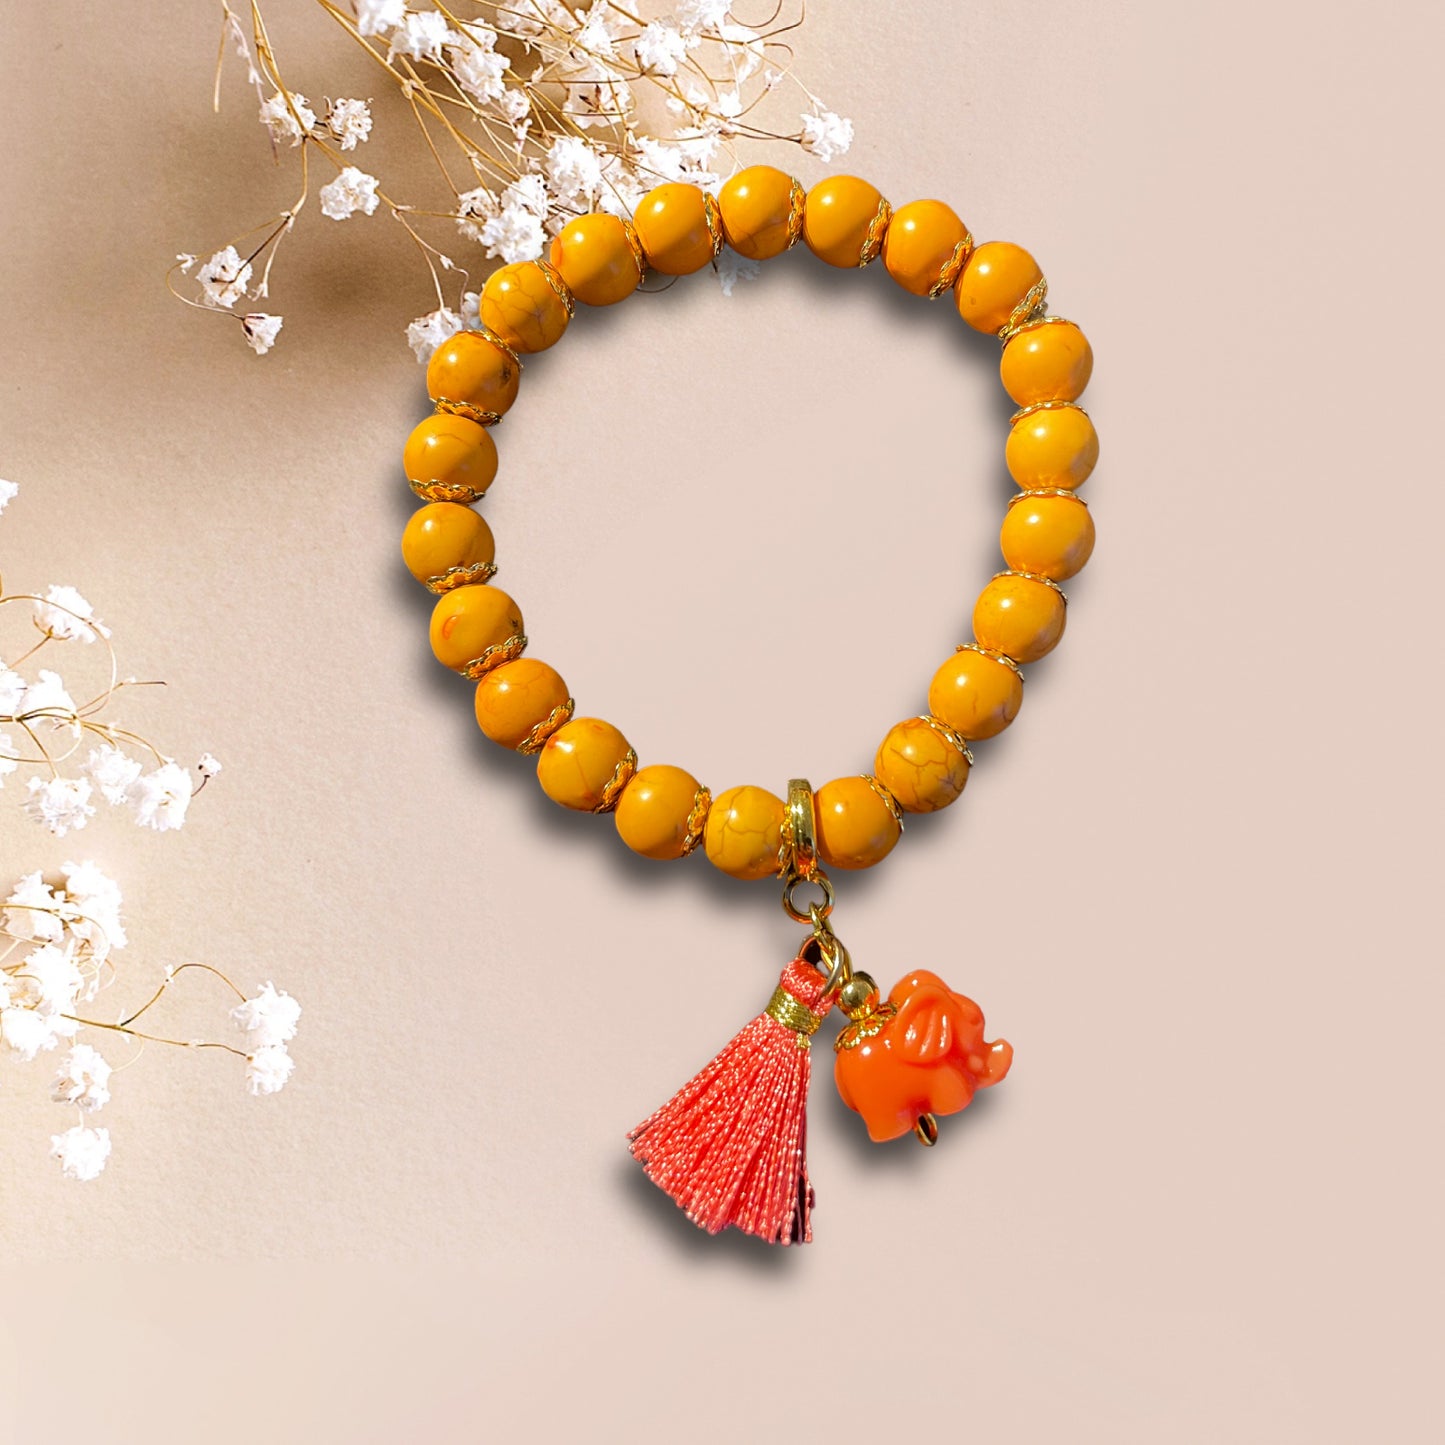 Armband YARA aus orangenen Perlen mit einem Anhänger Elefant und kleiner Quaste